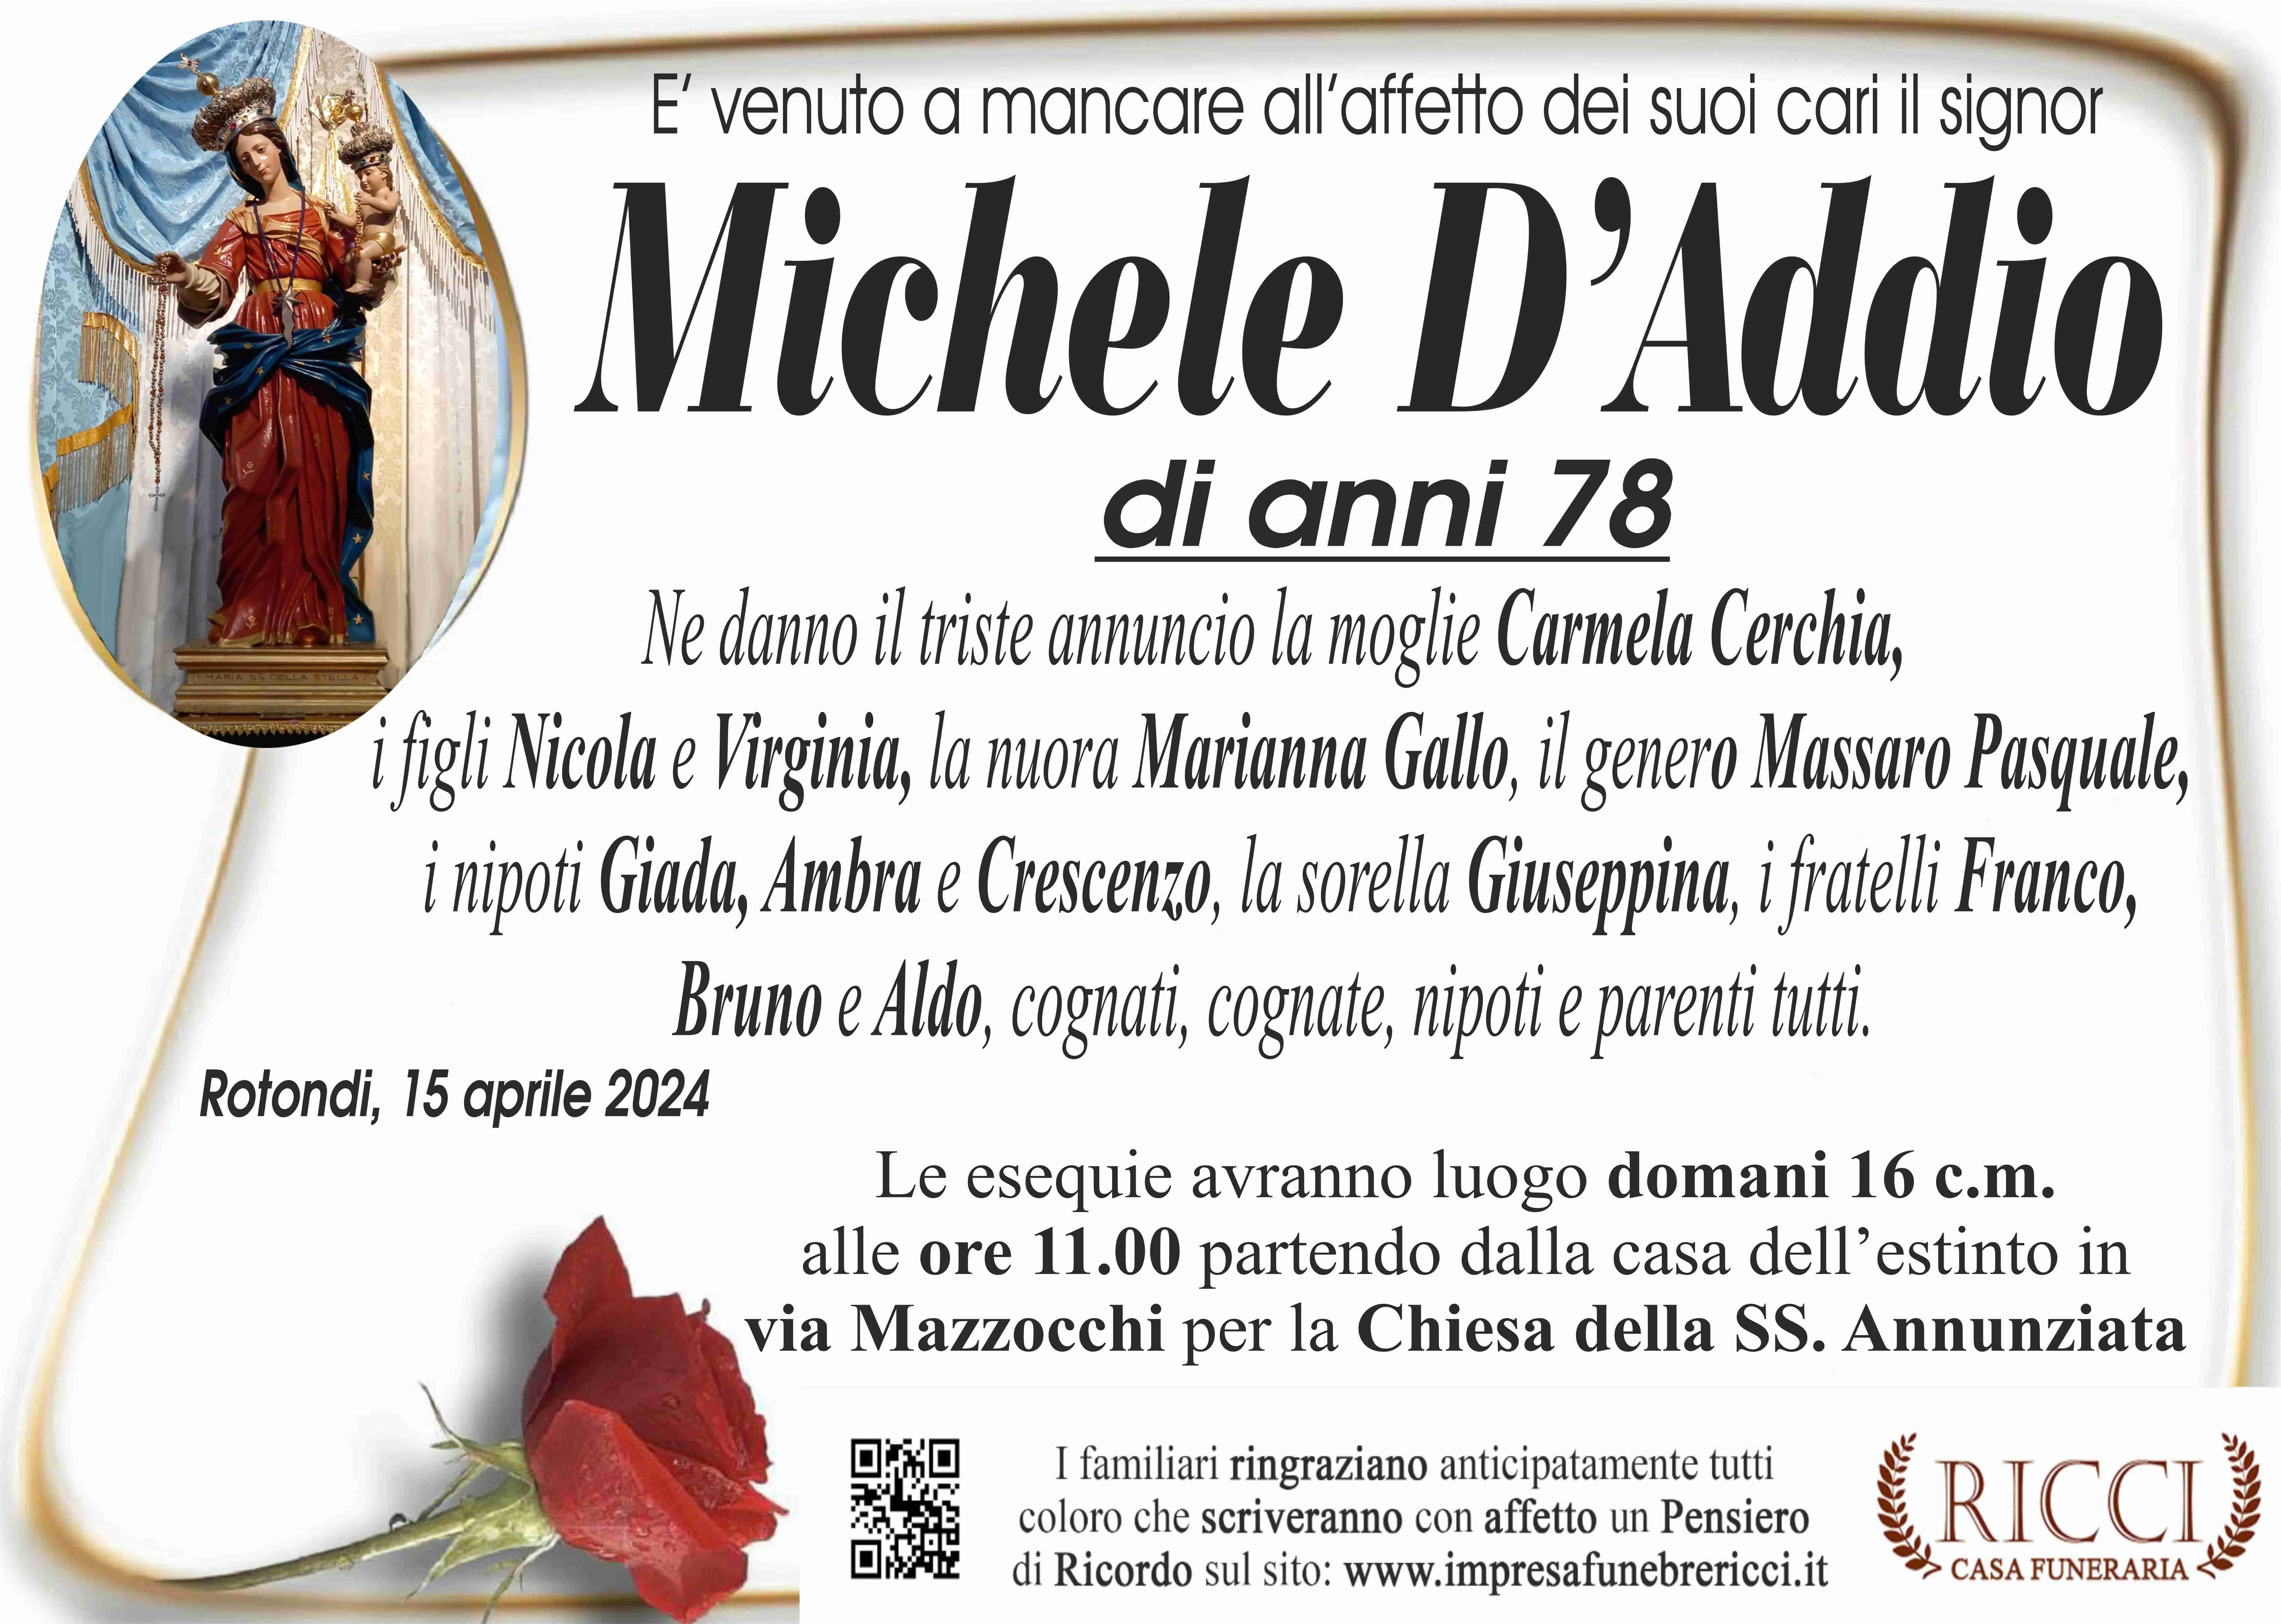 Michele D'Addio